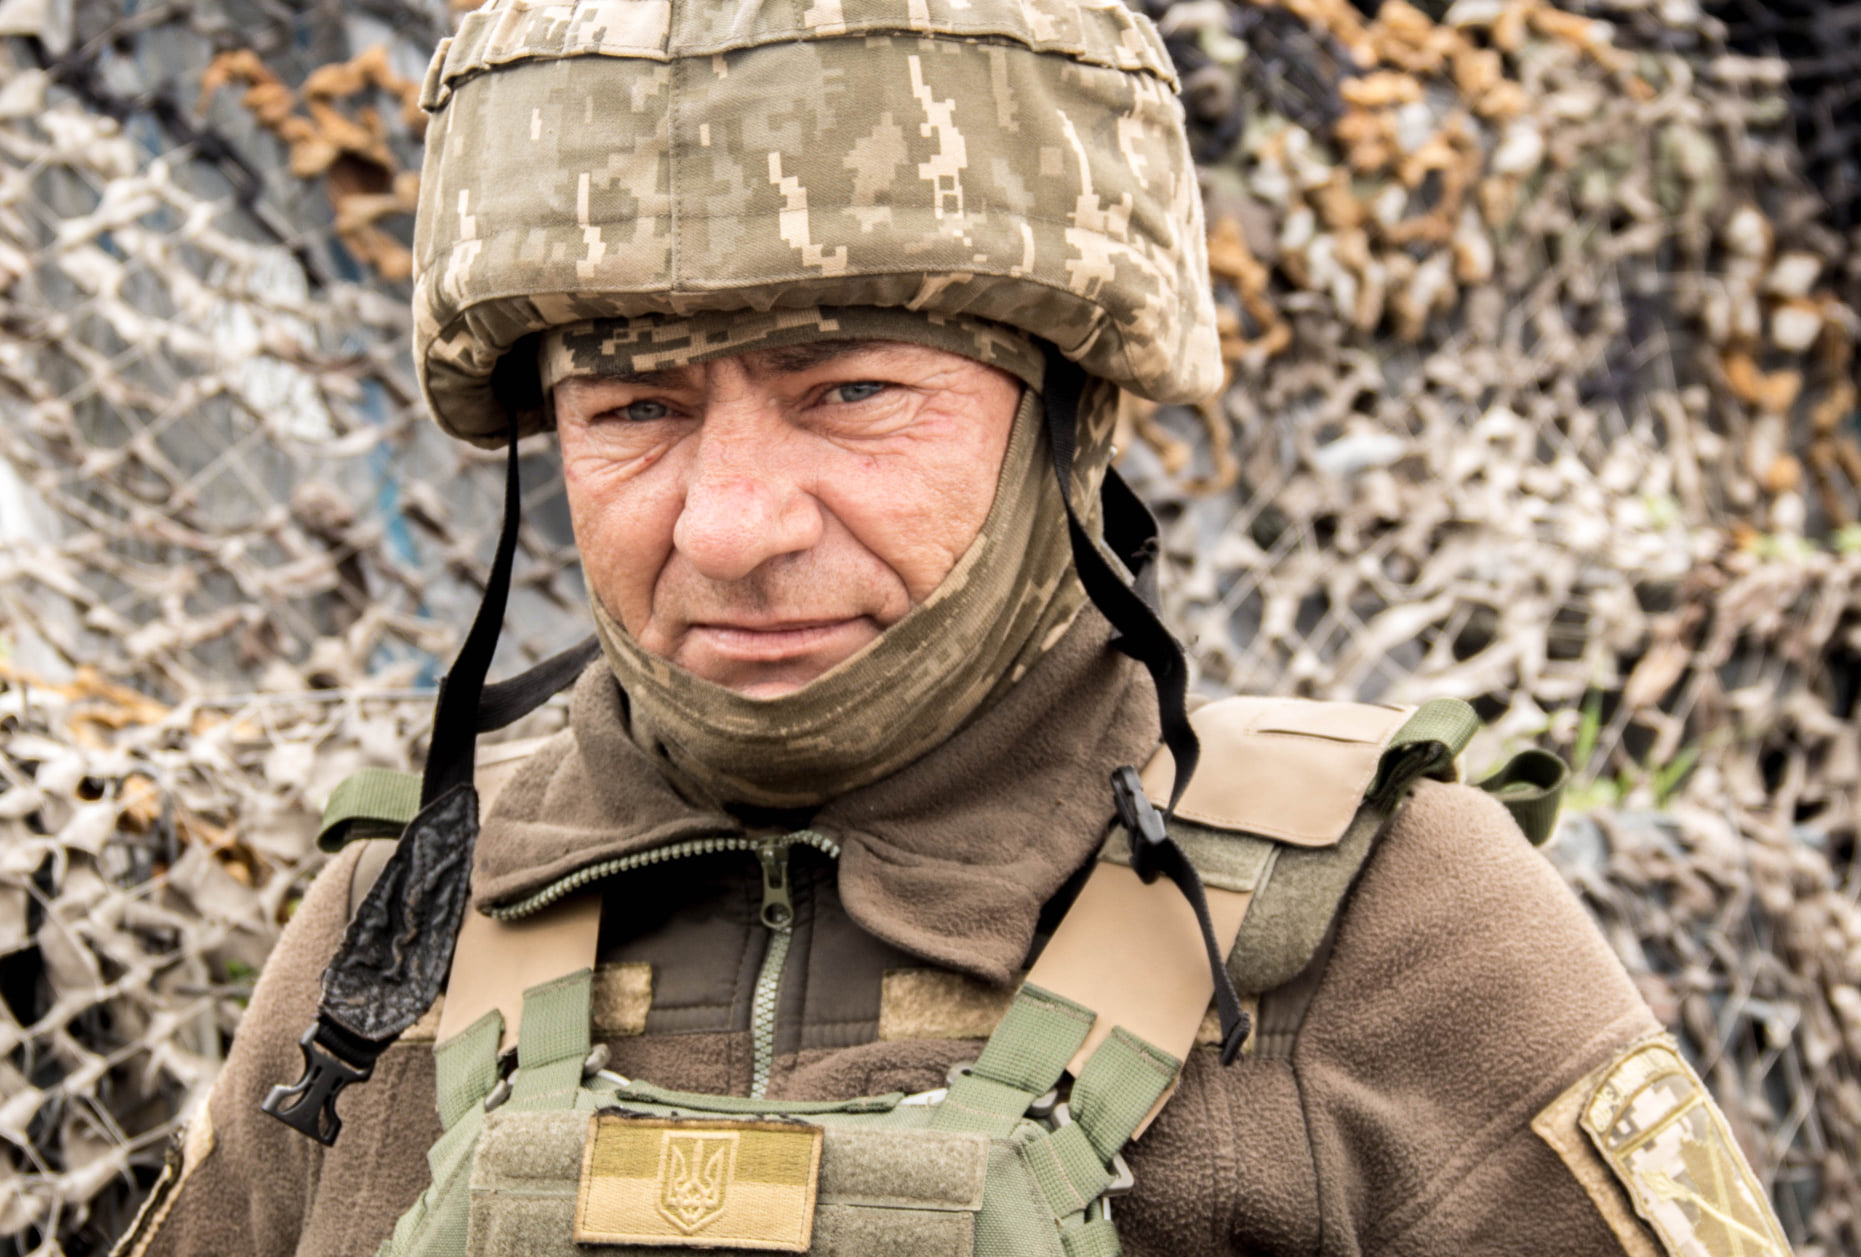 Закарпатець Всеволод з позивним "Дід" 7 років захищає Україну на Донбасі (ФОТО)